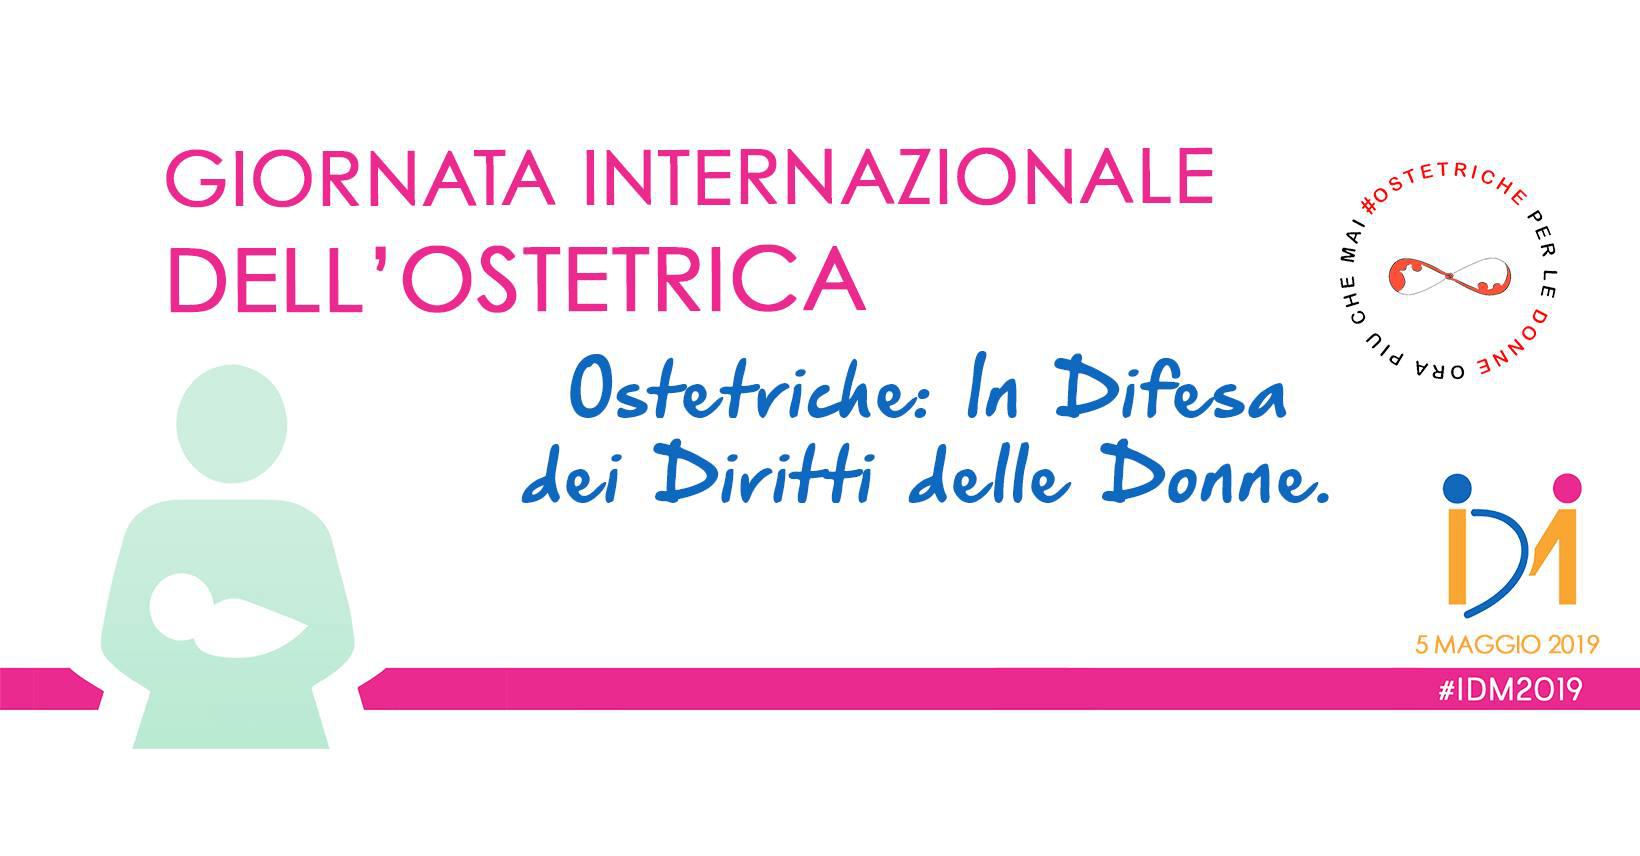 5 maggio Giornata internazionale dell’Ostetrica